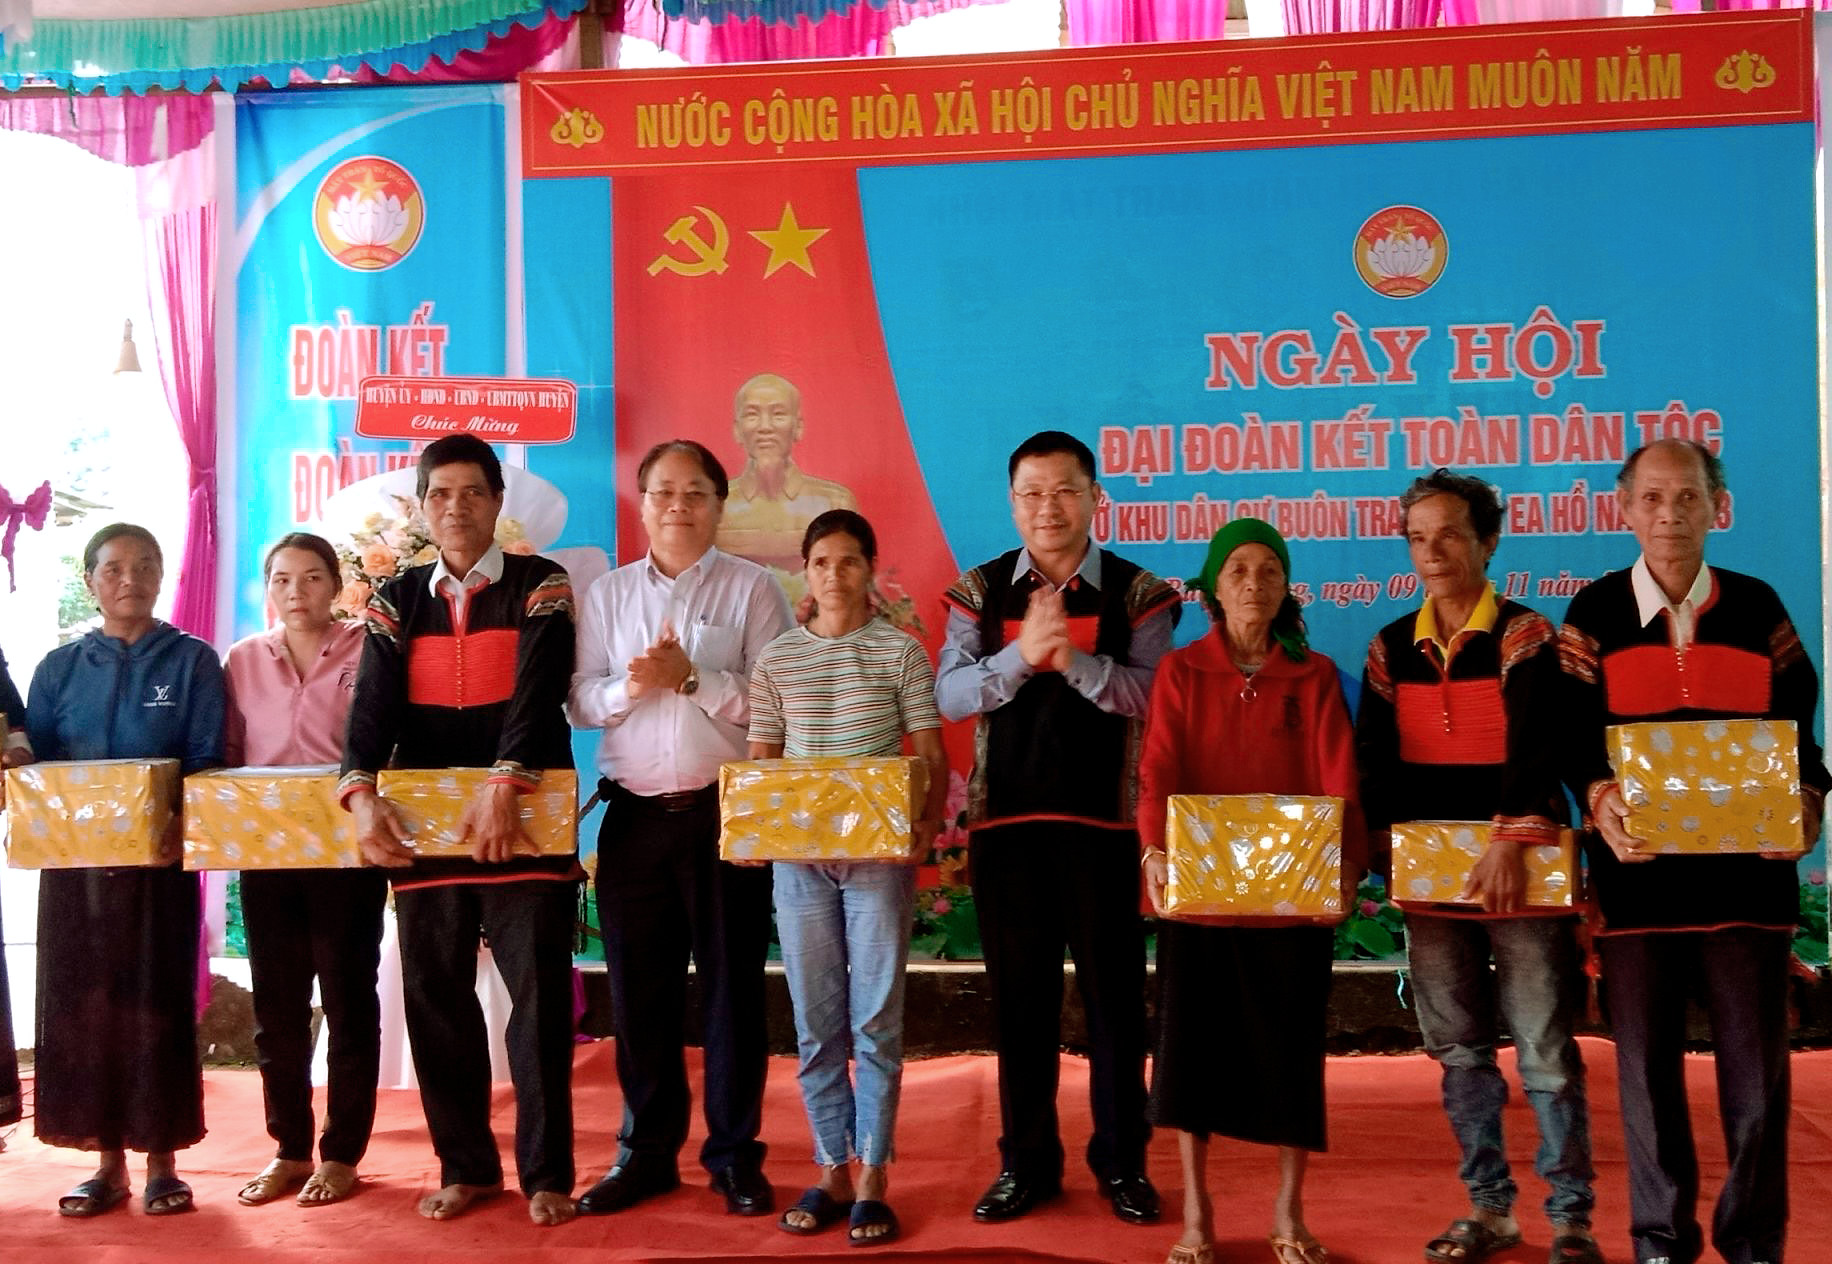 Ngày hội Đại đoàn kết toàn dân tộc tại xã Ea Hồ, huyện Krông Năng